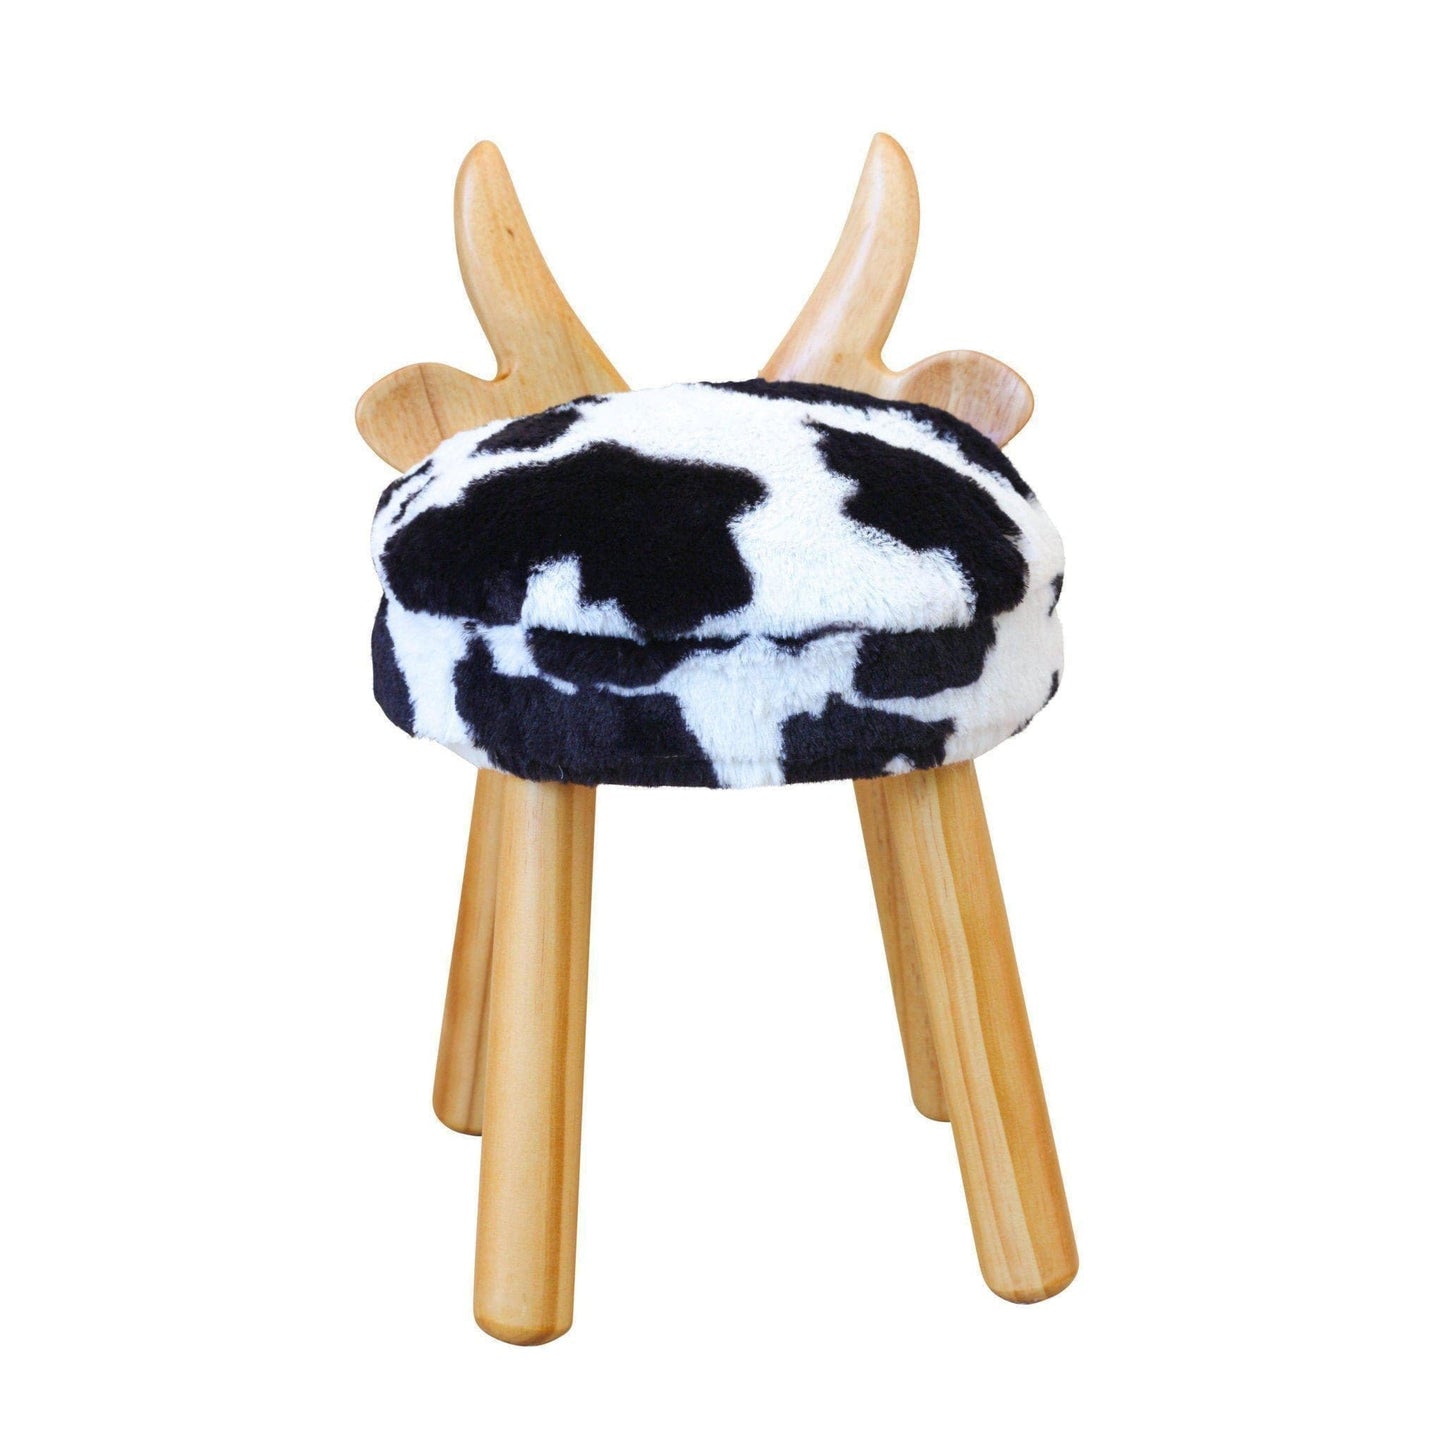 Scratch & Dent Wooden Cow Chair